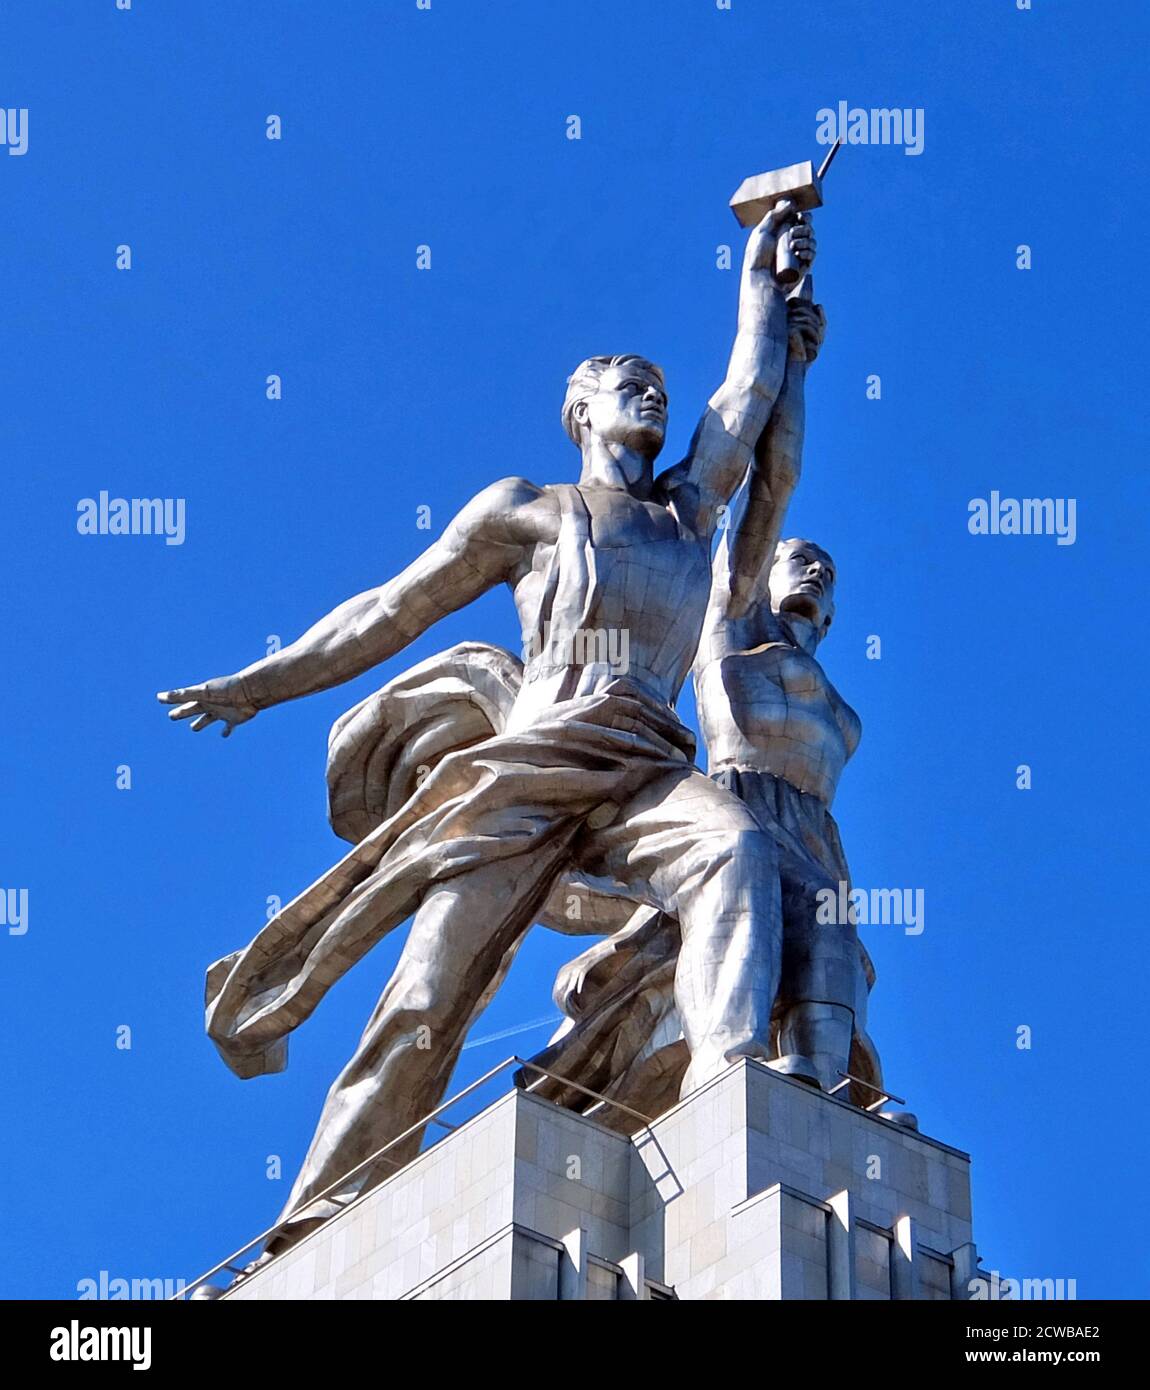 Arbeiter und Kolchosfrau Skulptur in Moskau, zeigt zwei Figuren mit einer Sichel und einem Hammer über ihren Köpfen angehoben. Sie ist 24.5 Meter (78 Fuß) hoch, aus Edelstahl von Vera Mukhina für die Weltausstellung 1937 in Paris hergestellt und anschließend nach Moskau gezogen. Die Skulptur ist ein Beispiel für den sozialistischen realistischen Stil, sowie Art Deco-Stil. Der Arbeiter hält einen Hammer und die Kolchosfrau eine Sichel hoch, um das Hammer- und Sichelsymbol zu bilden. Stockfoto